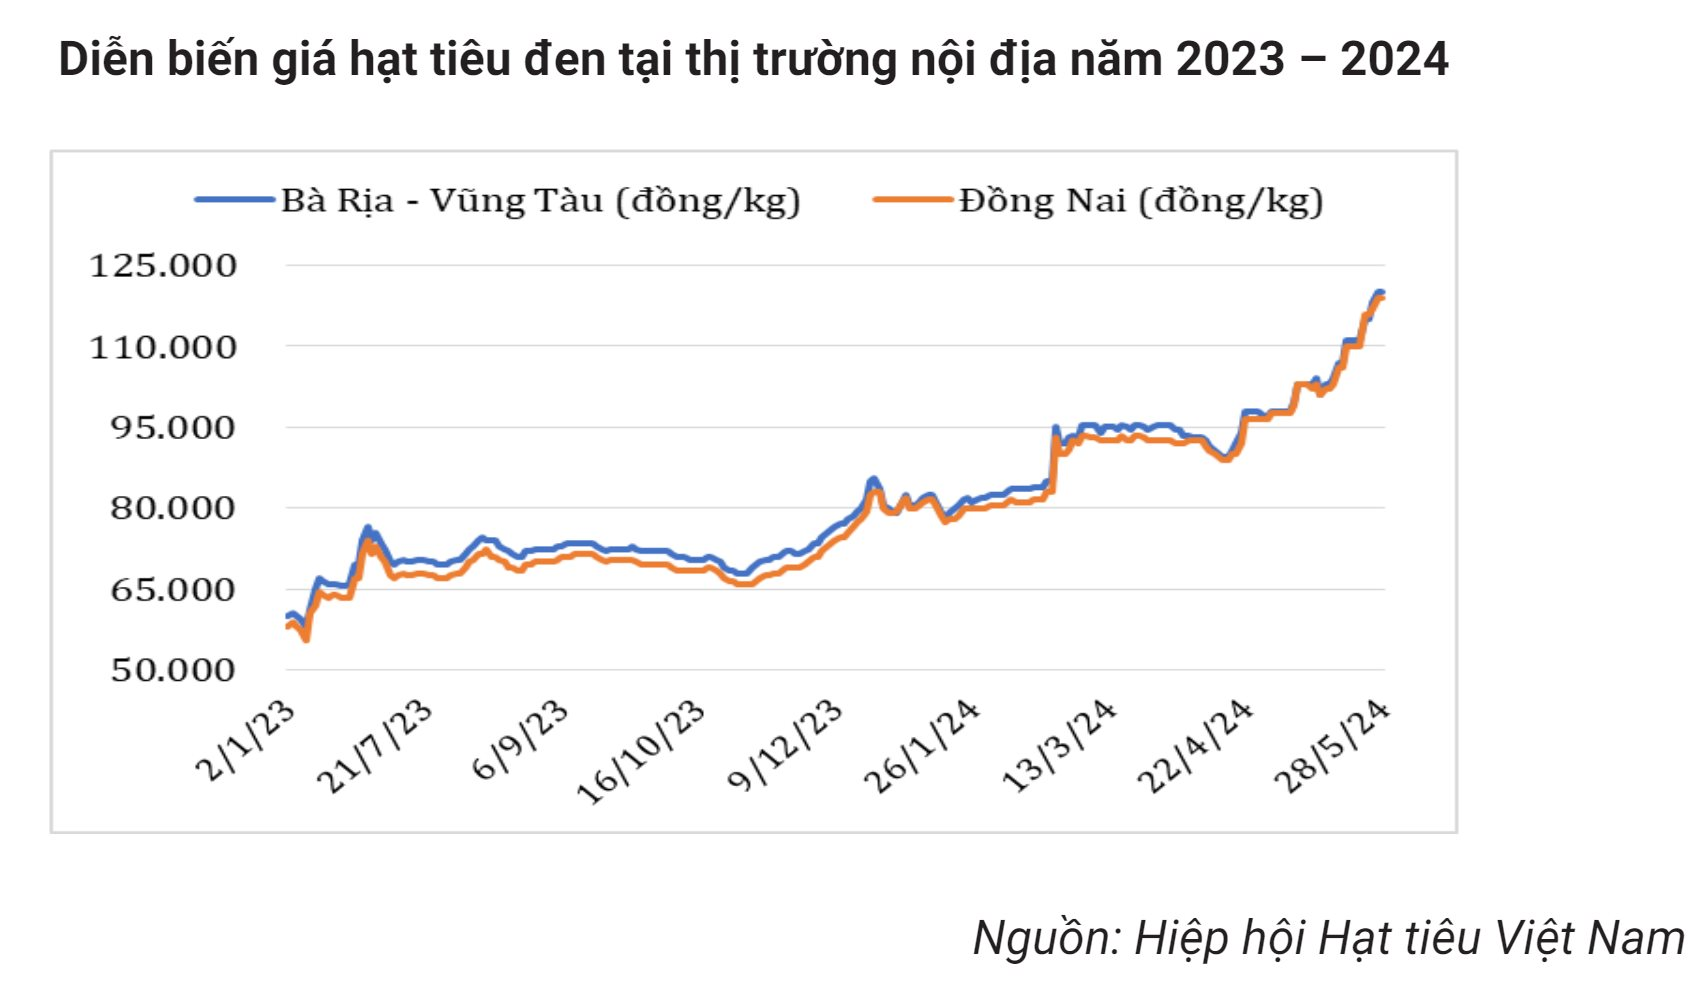 Giá liên tục phá đỉnh, 'vàng đen' của Việt Nam trở thành mặt hàng hot được nhiều nước săn lùng, dễ dàng cán đích xuất khẩu 1 tỷ USD- Ảnh 2.